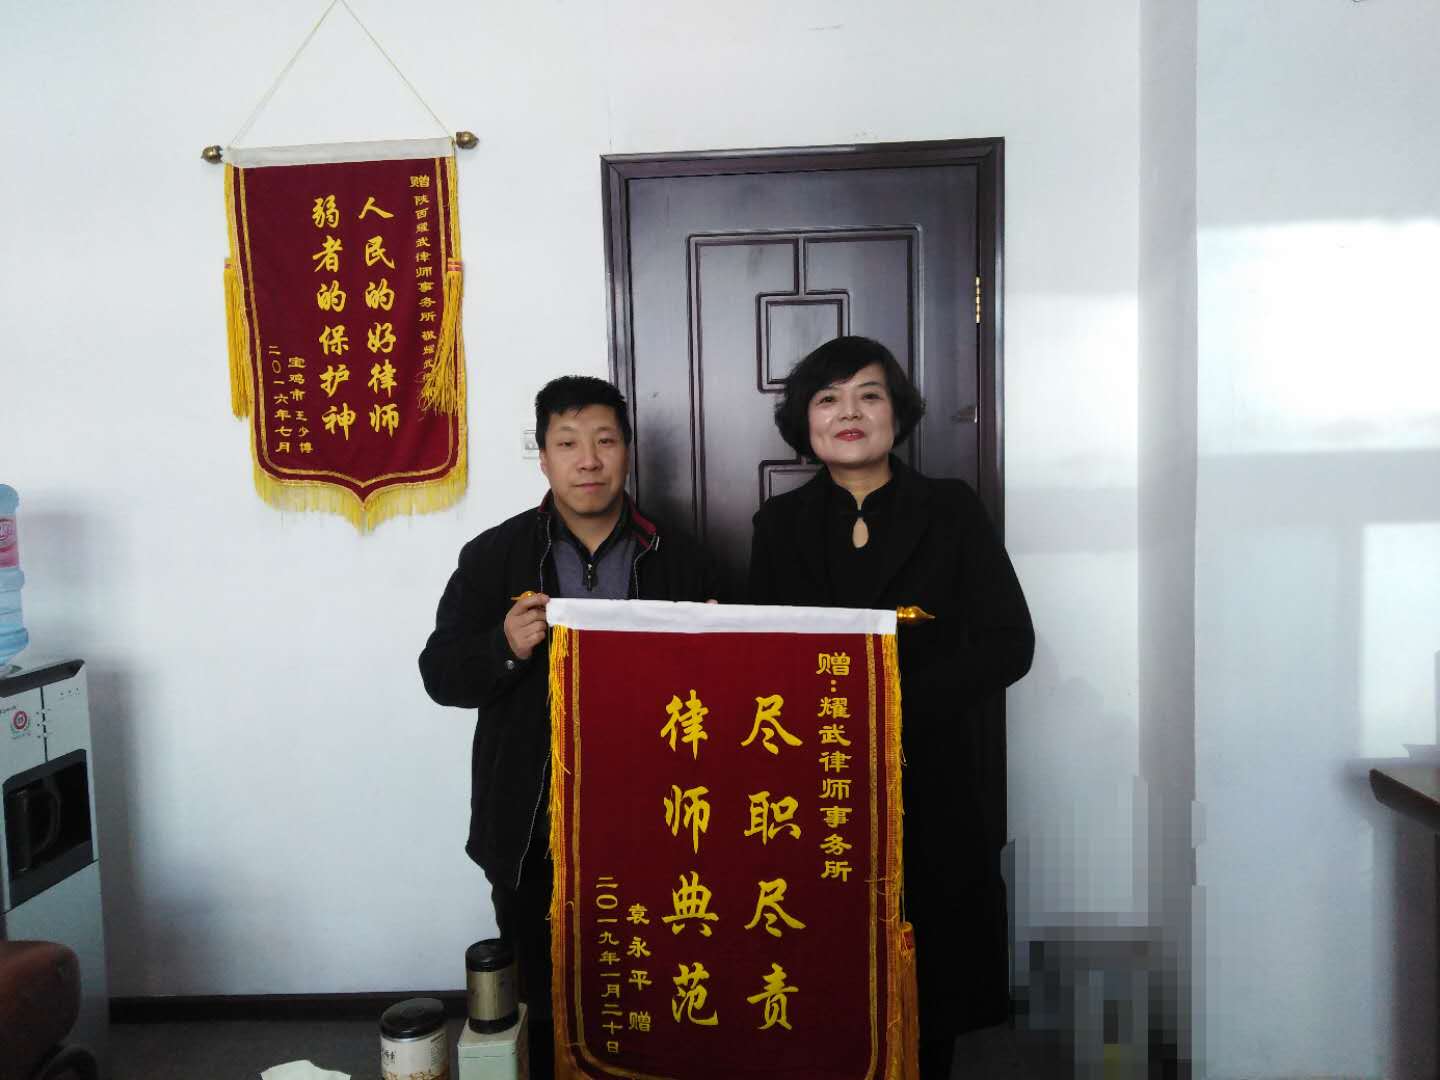 锦旗相赠，尽职尽责——渭滨区法学会会员刘小平获赠锦旗(图1)